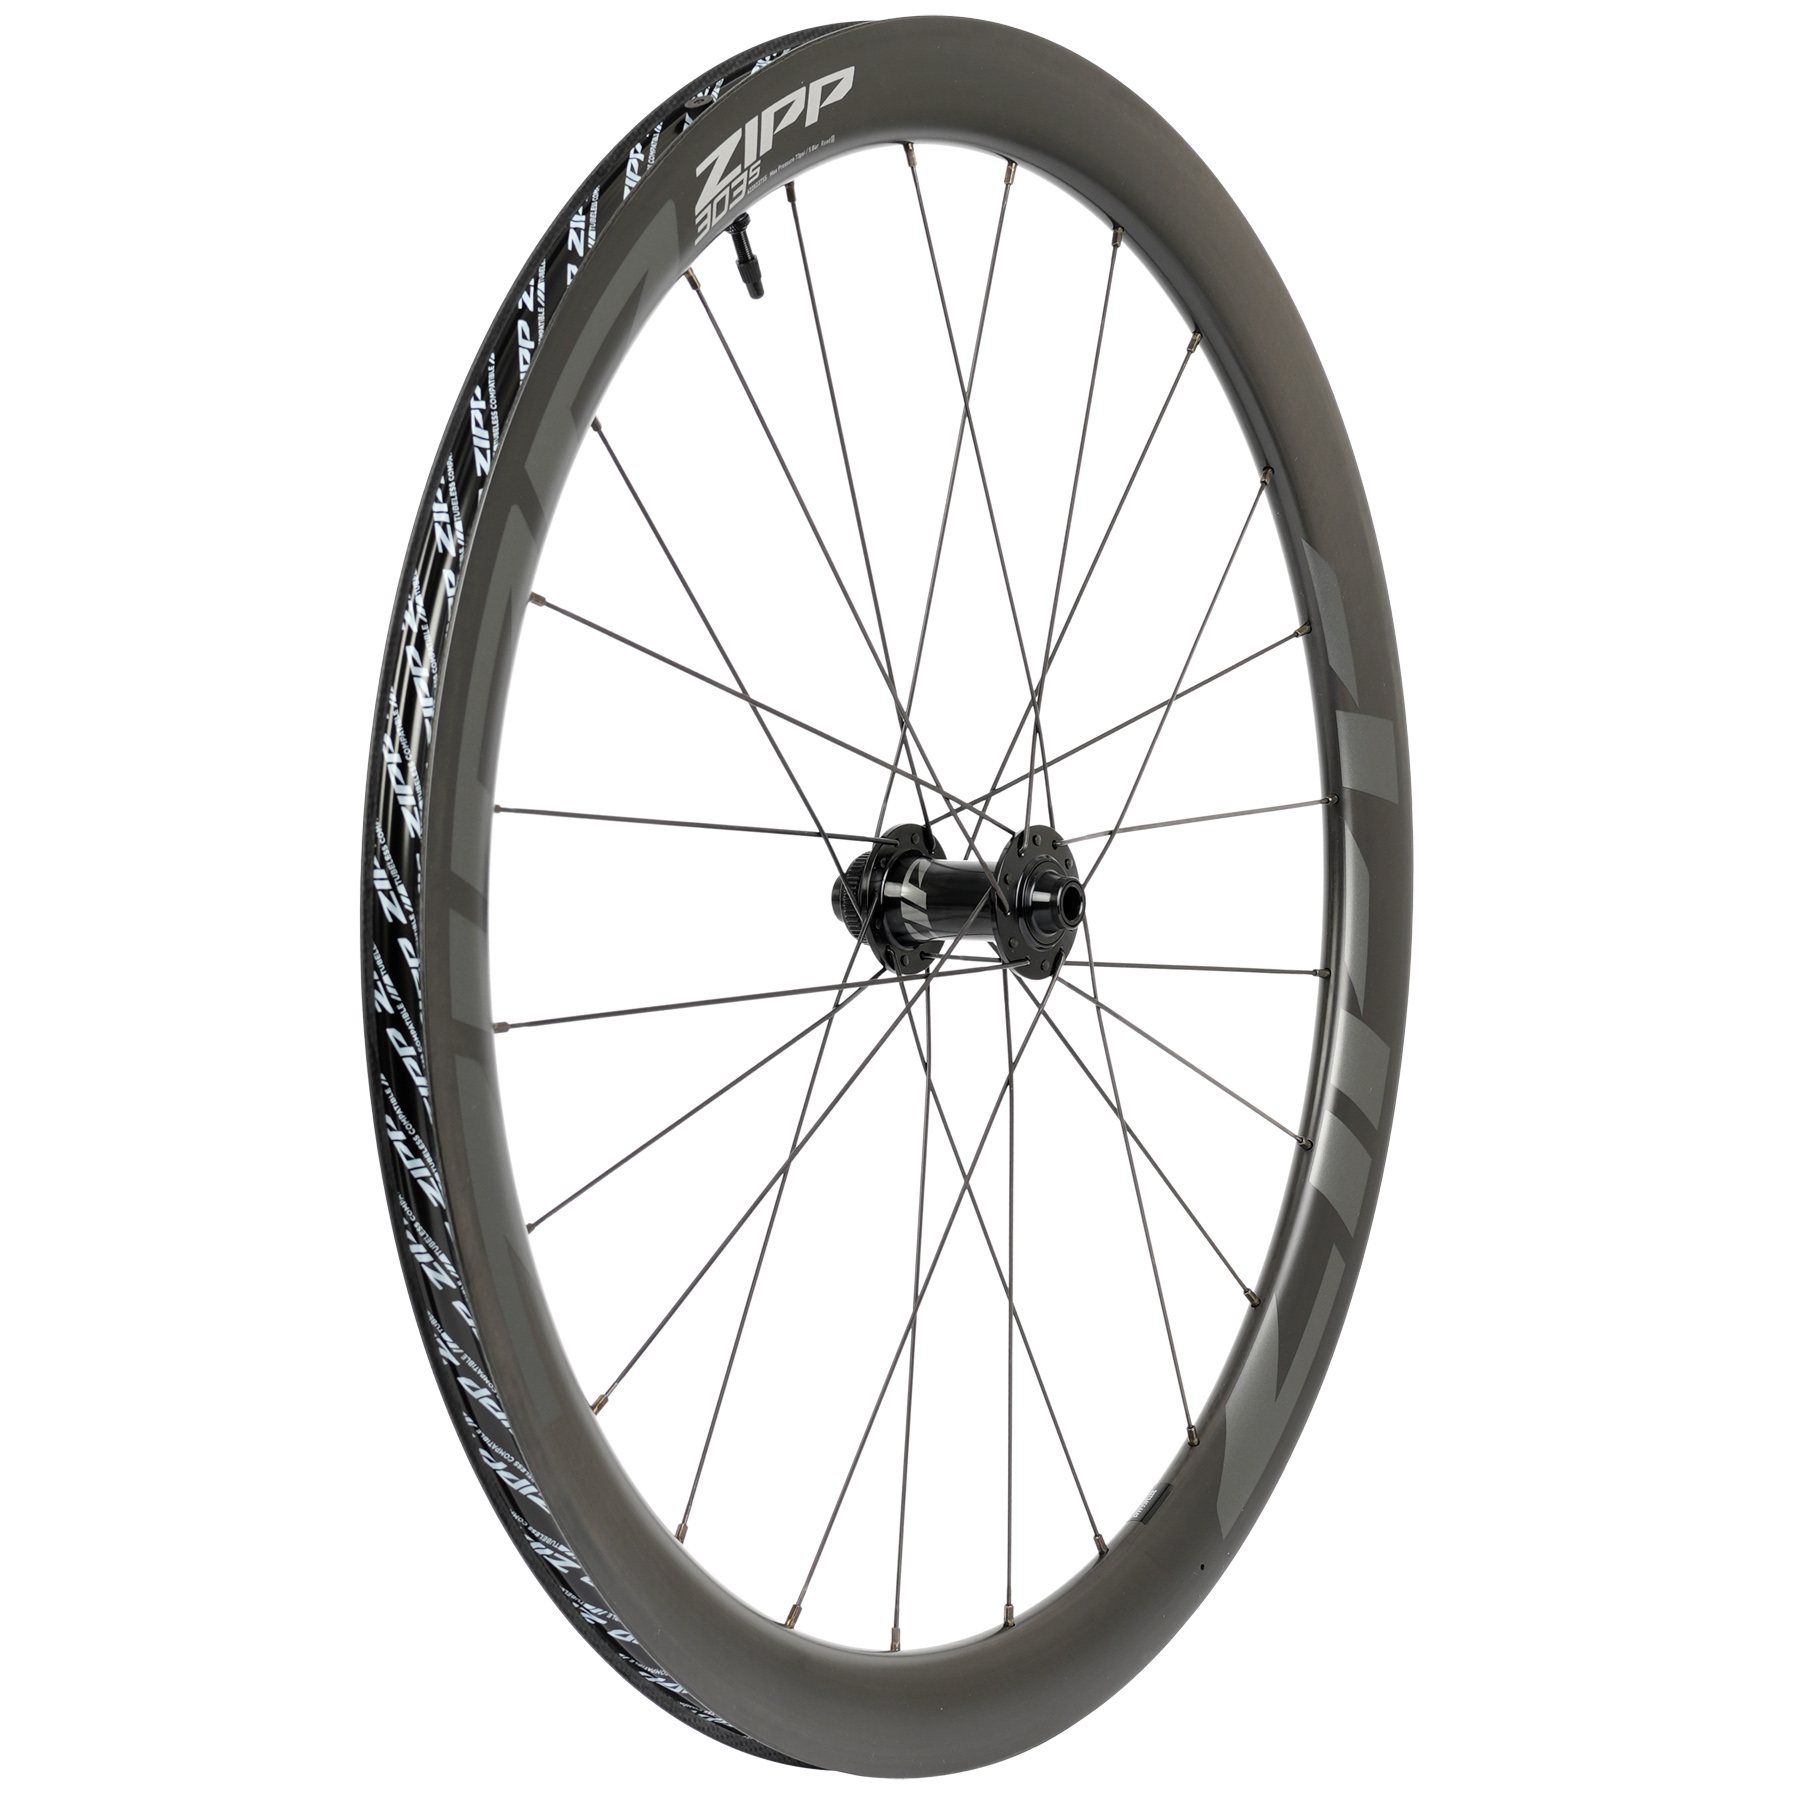 Productfoto van ZIPP 303 S Carbon Front Wheel - Tubeless - Centerlock - 12x100mm - black